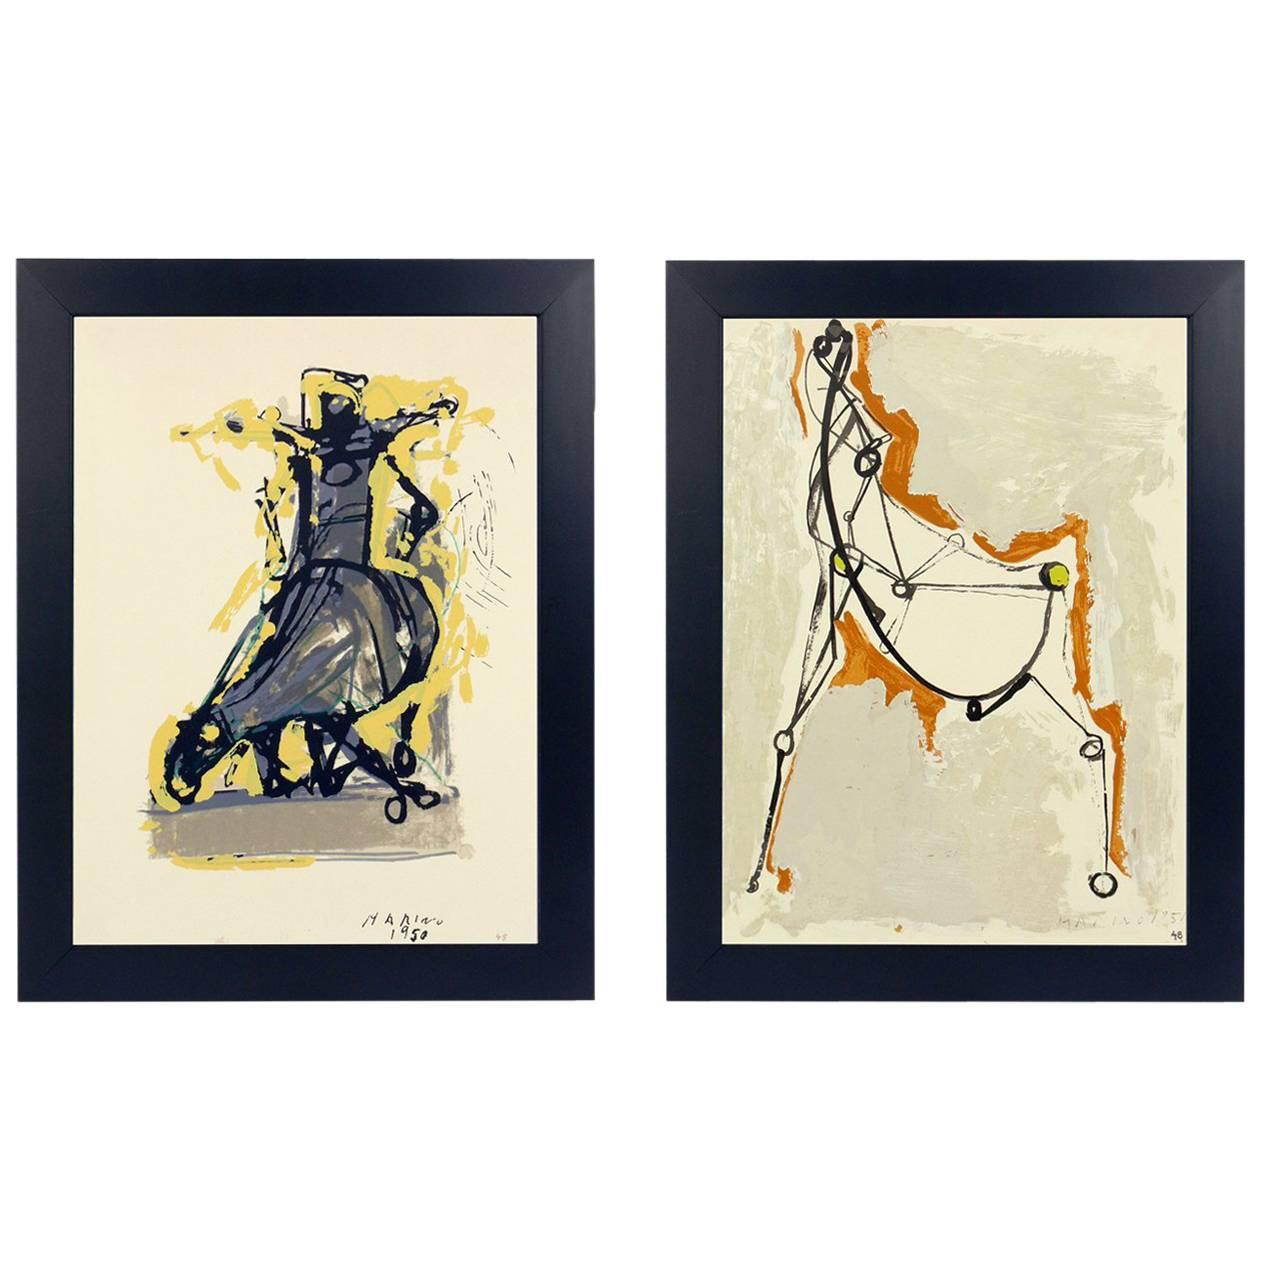 Sélection de trois lithographies de chevaux et de cavaliers par Marino Marini, provenant du portefeuille Marino Marini, imprimées par Carl Schunemann, Allemagne, vers 1968. Ils ont été encadrés dans des cadres de galerie en laque noire aux lignes